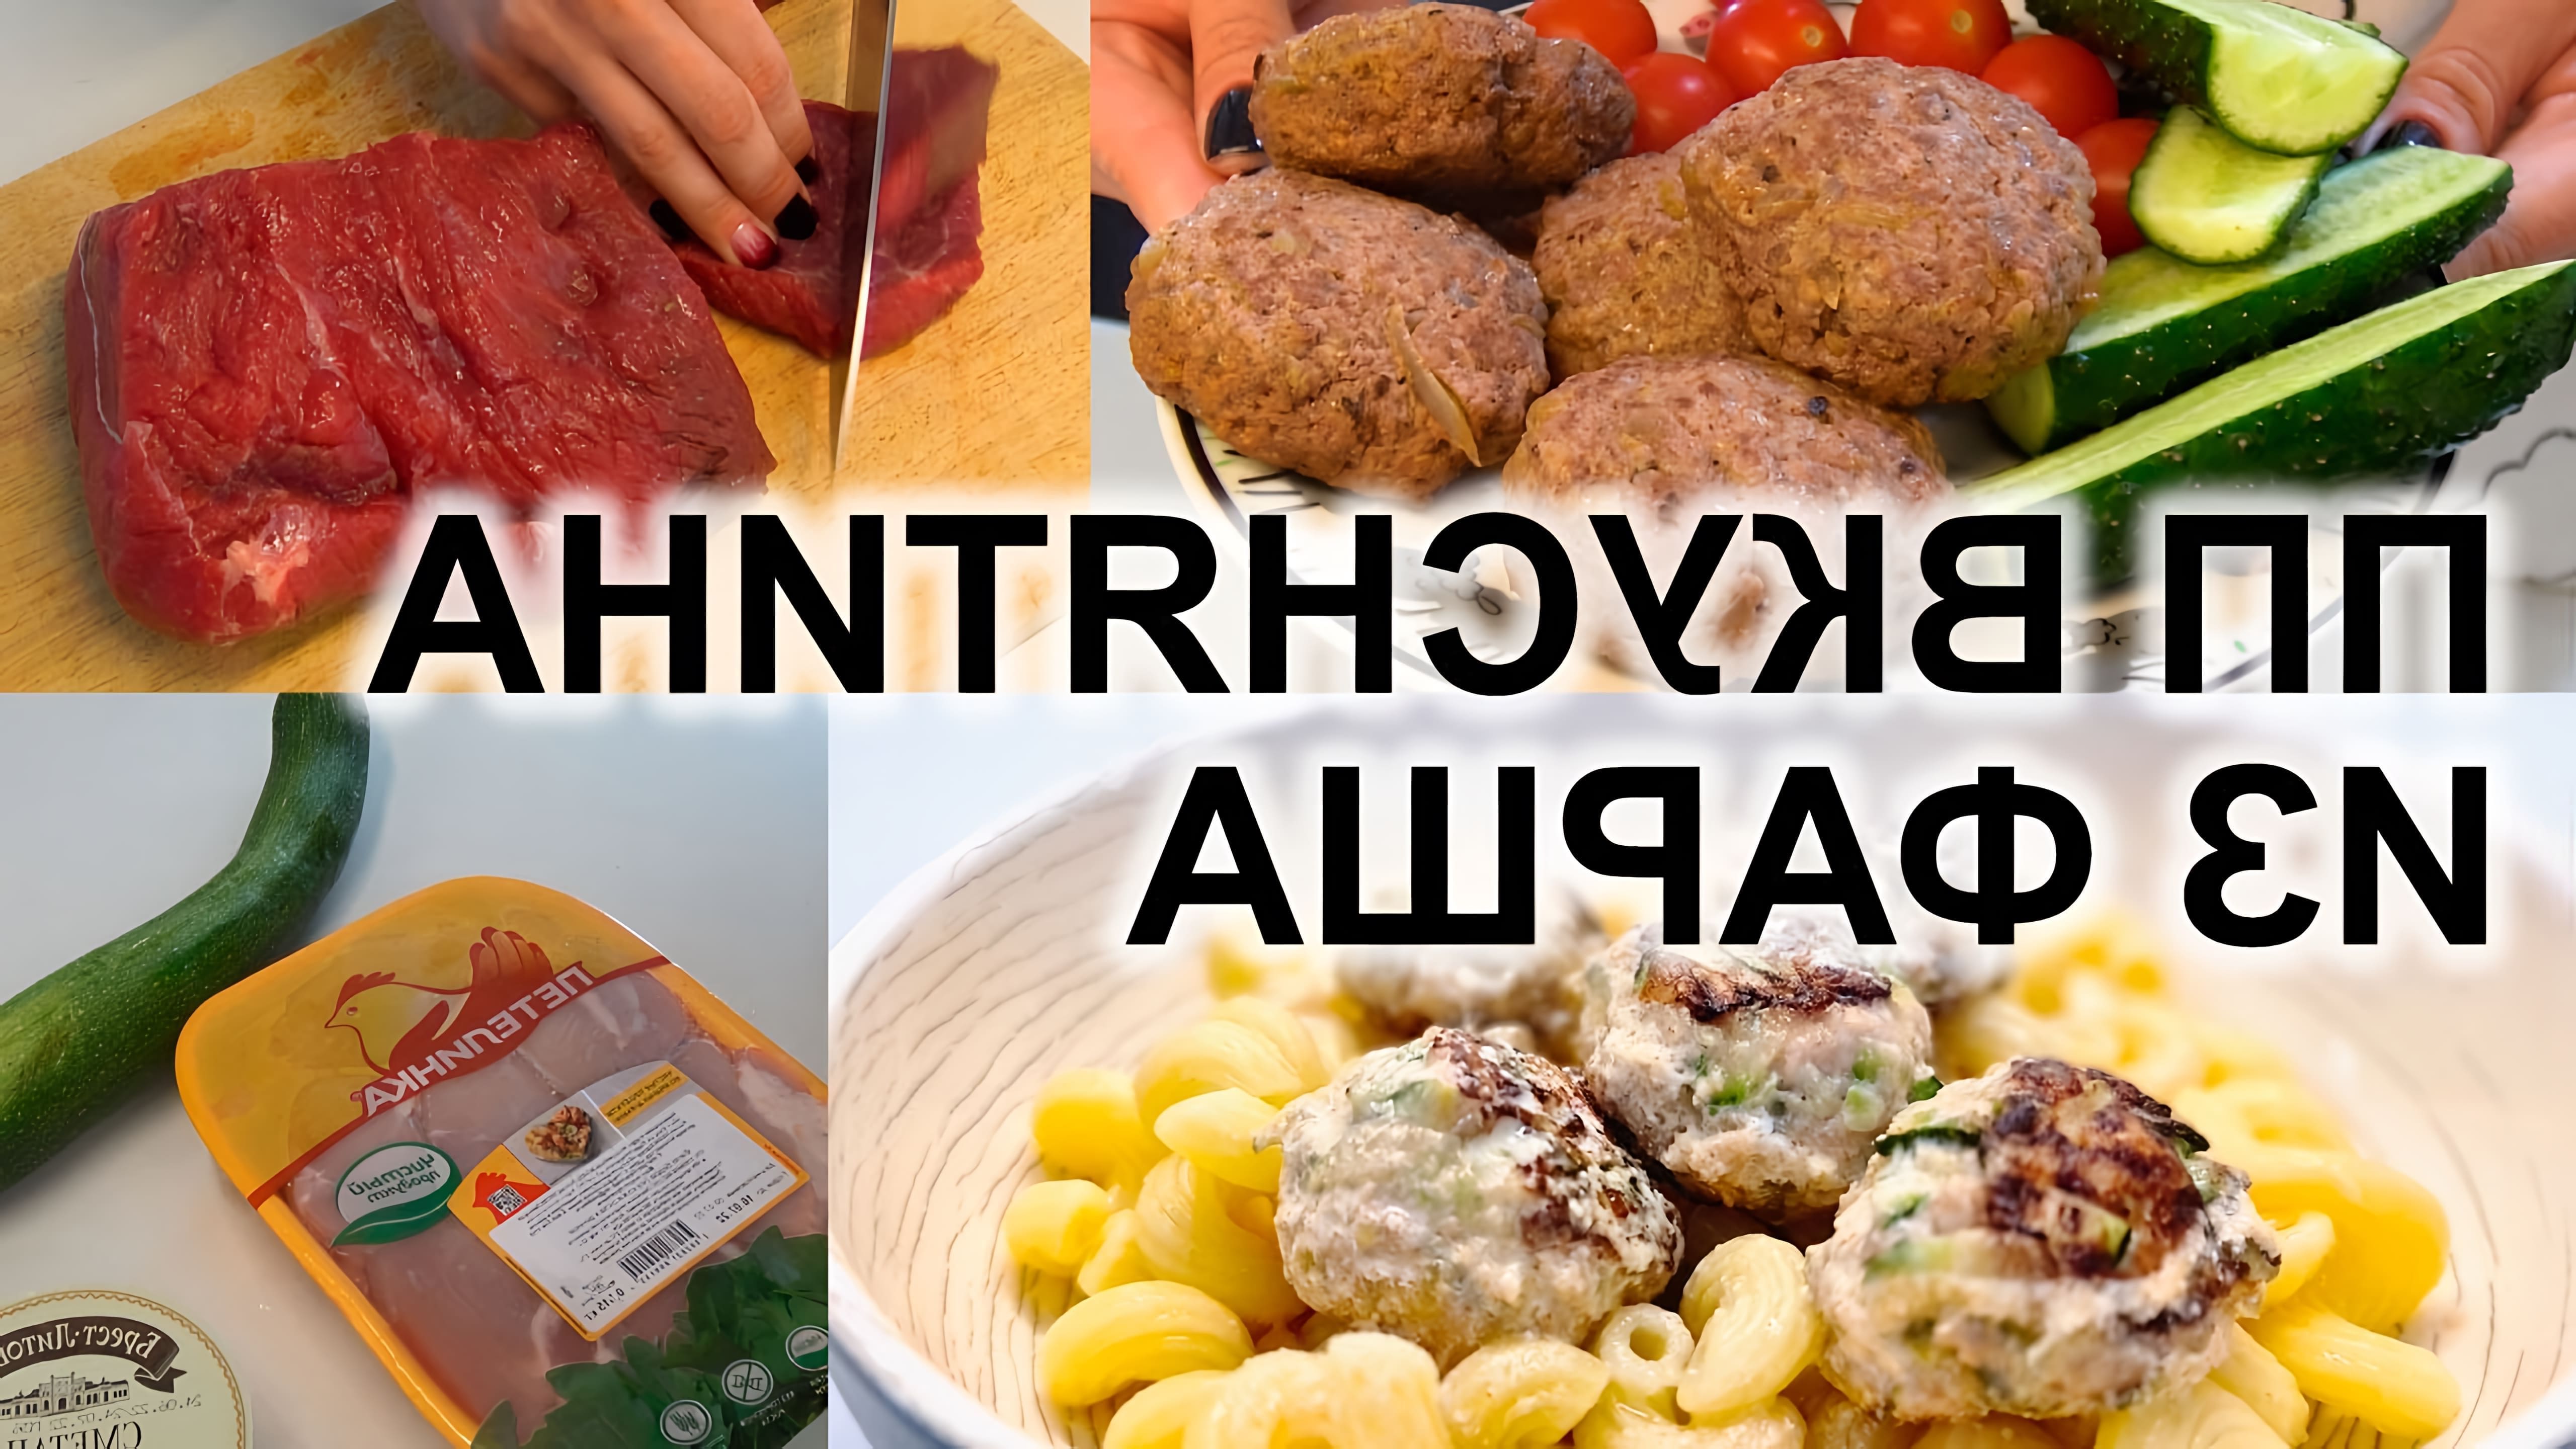 В этом видео показаны рецепты блюд из фарша, которые можно приготовить для похудения и правильного питания всей семьи